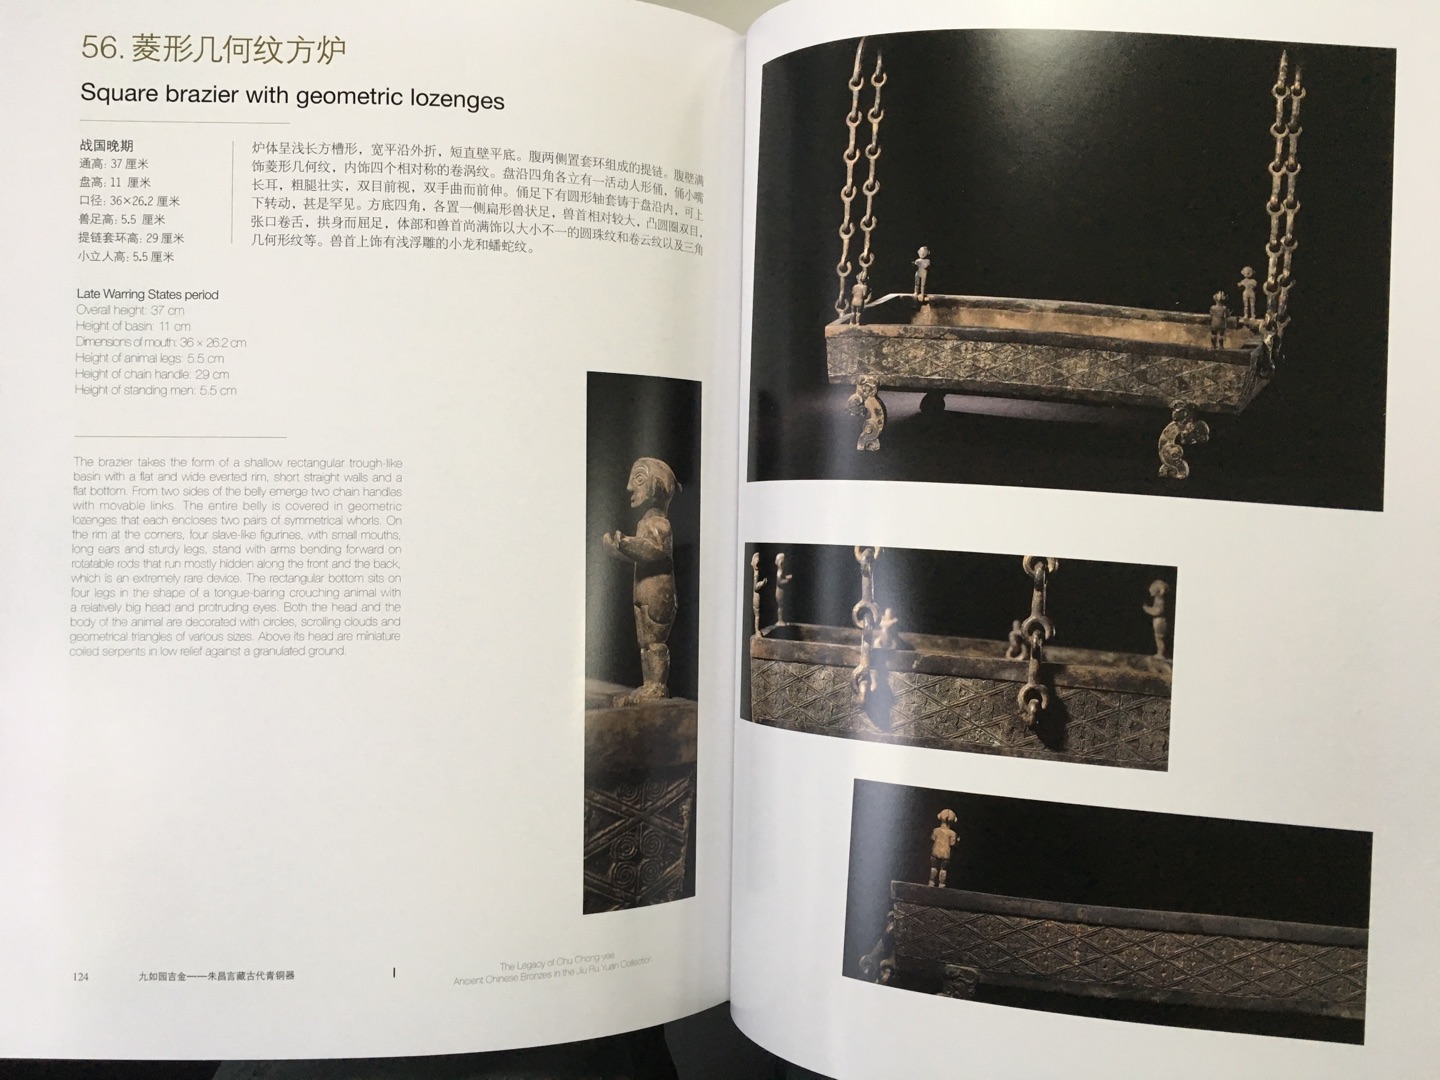 藏家把最珍贵的两件藏品捐赠了上海博物馆。功德无量?